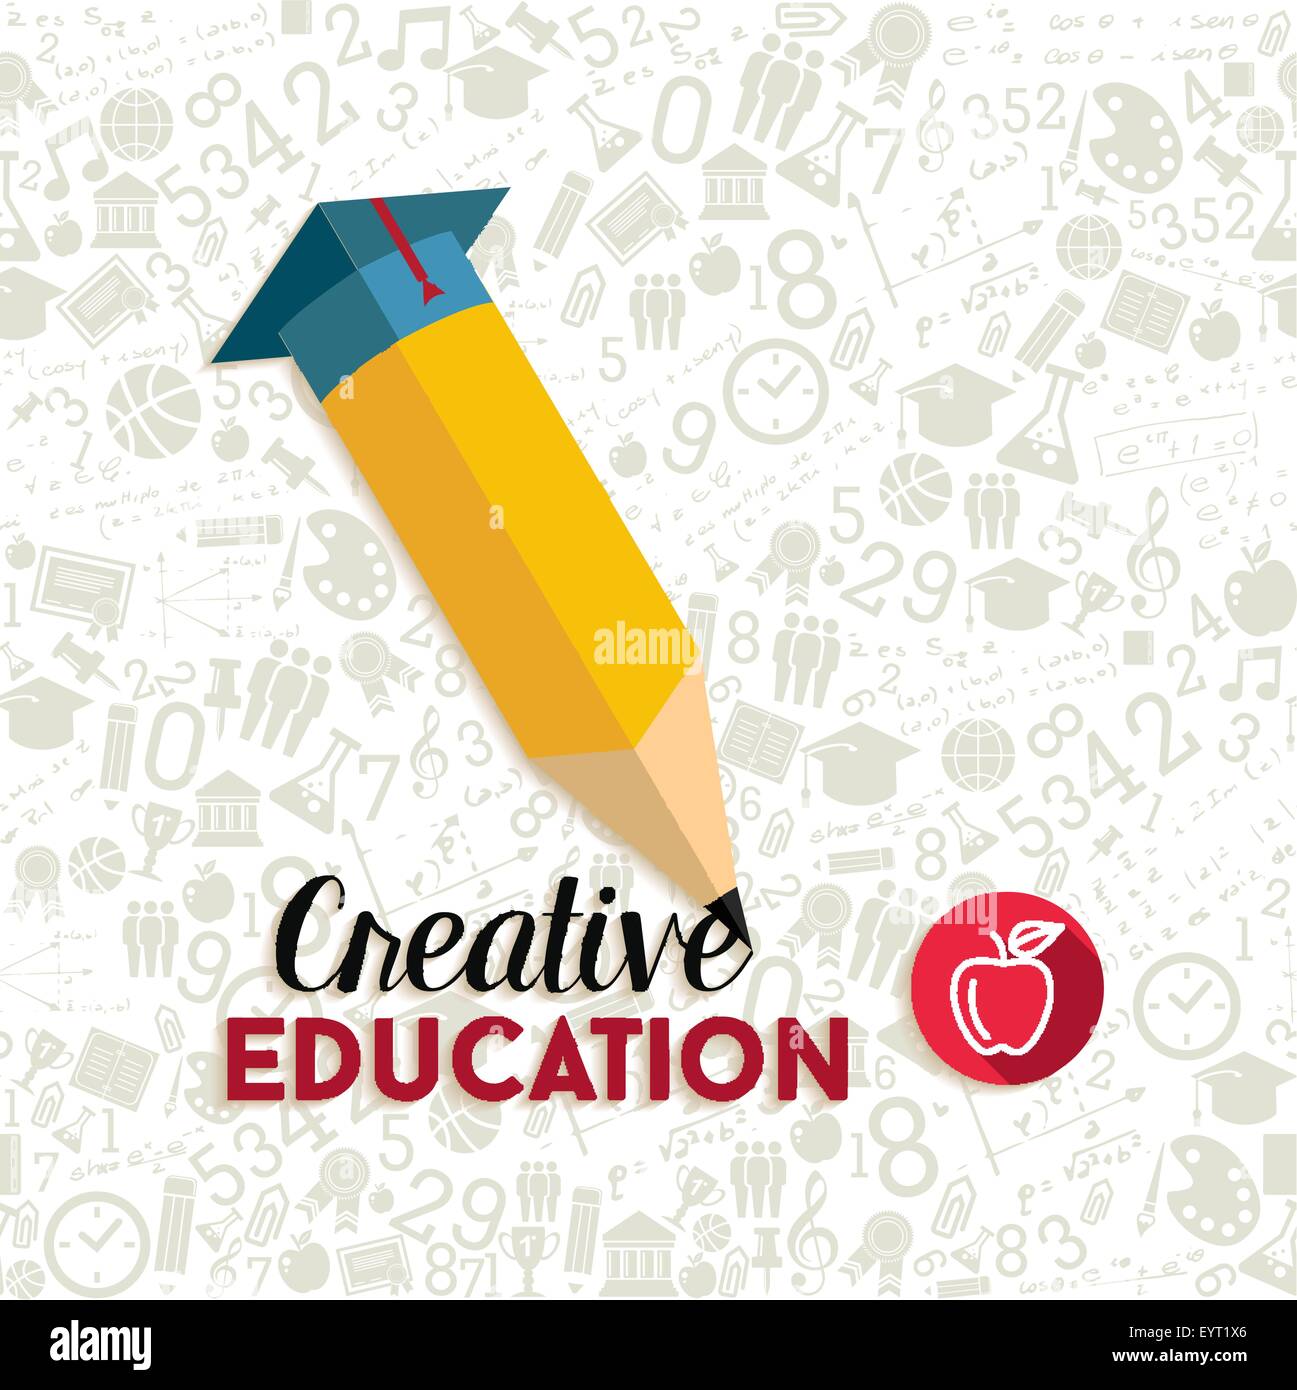 Retour à l'école avec creative concept forme crayon illustration et icônes de l'éducation de fond transparent. Vecteur EPS10. Illustration de Vecteur